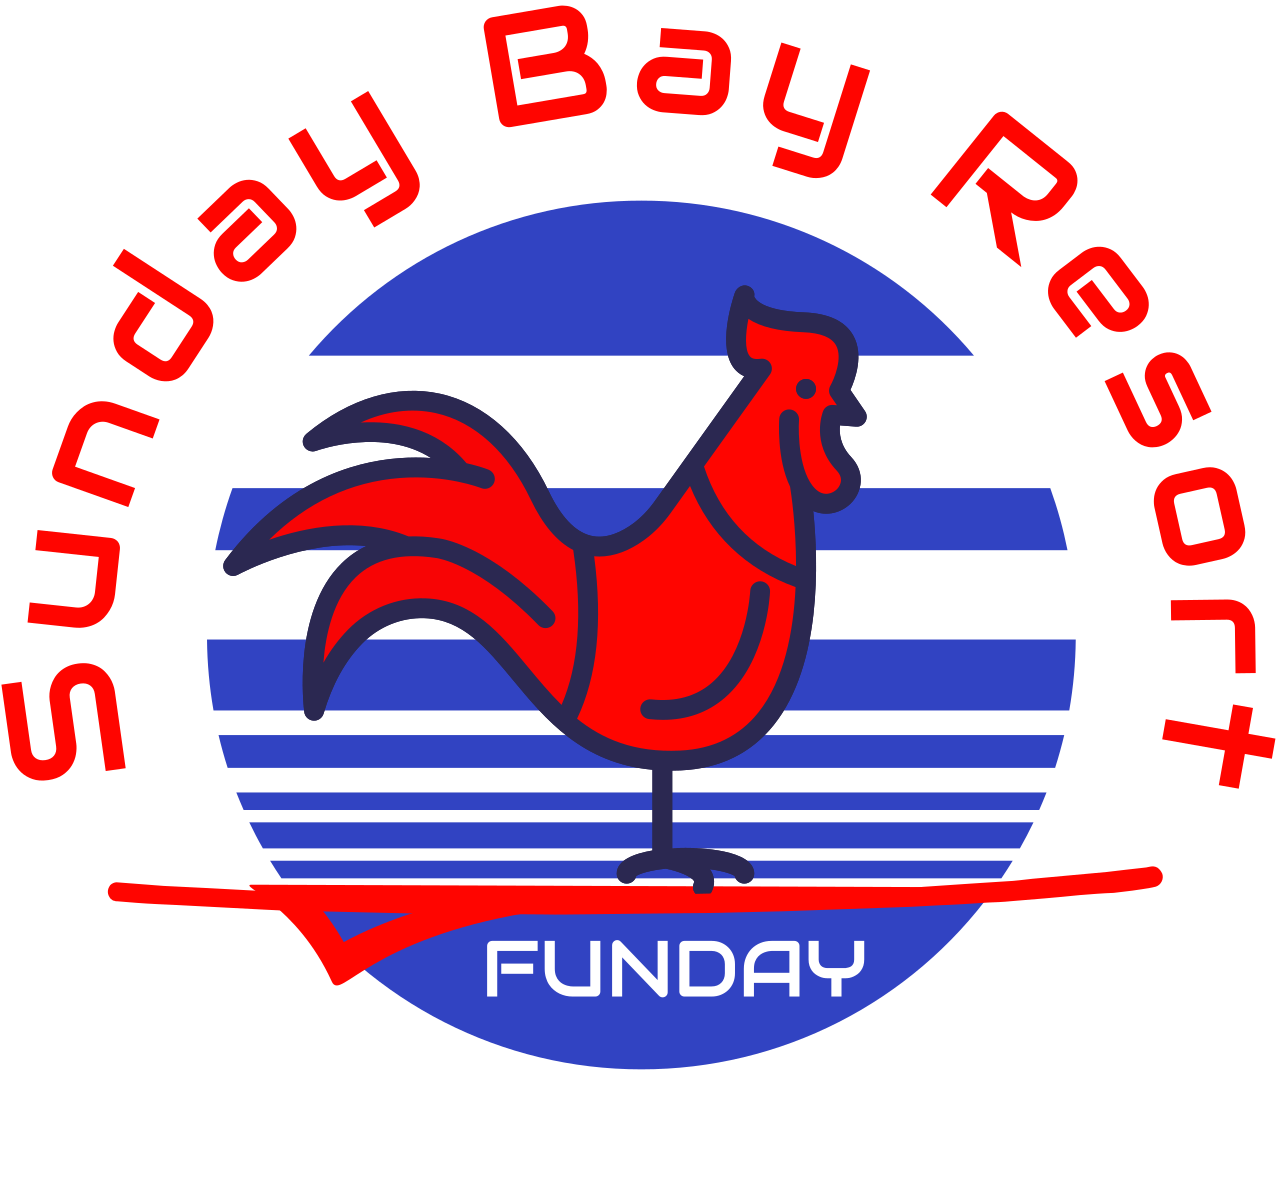 Sunday Bay Resort's logo